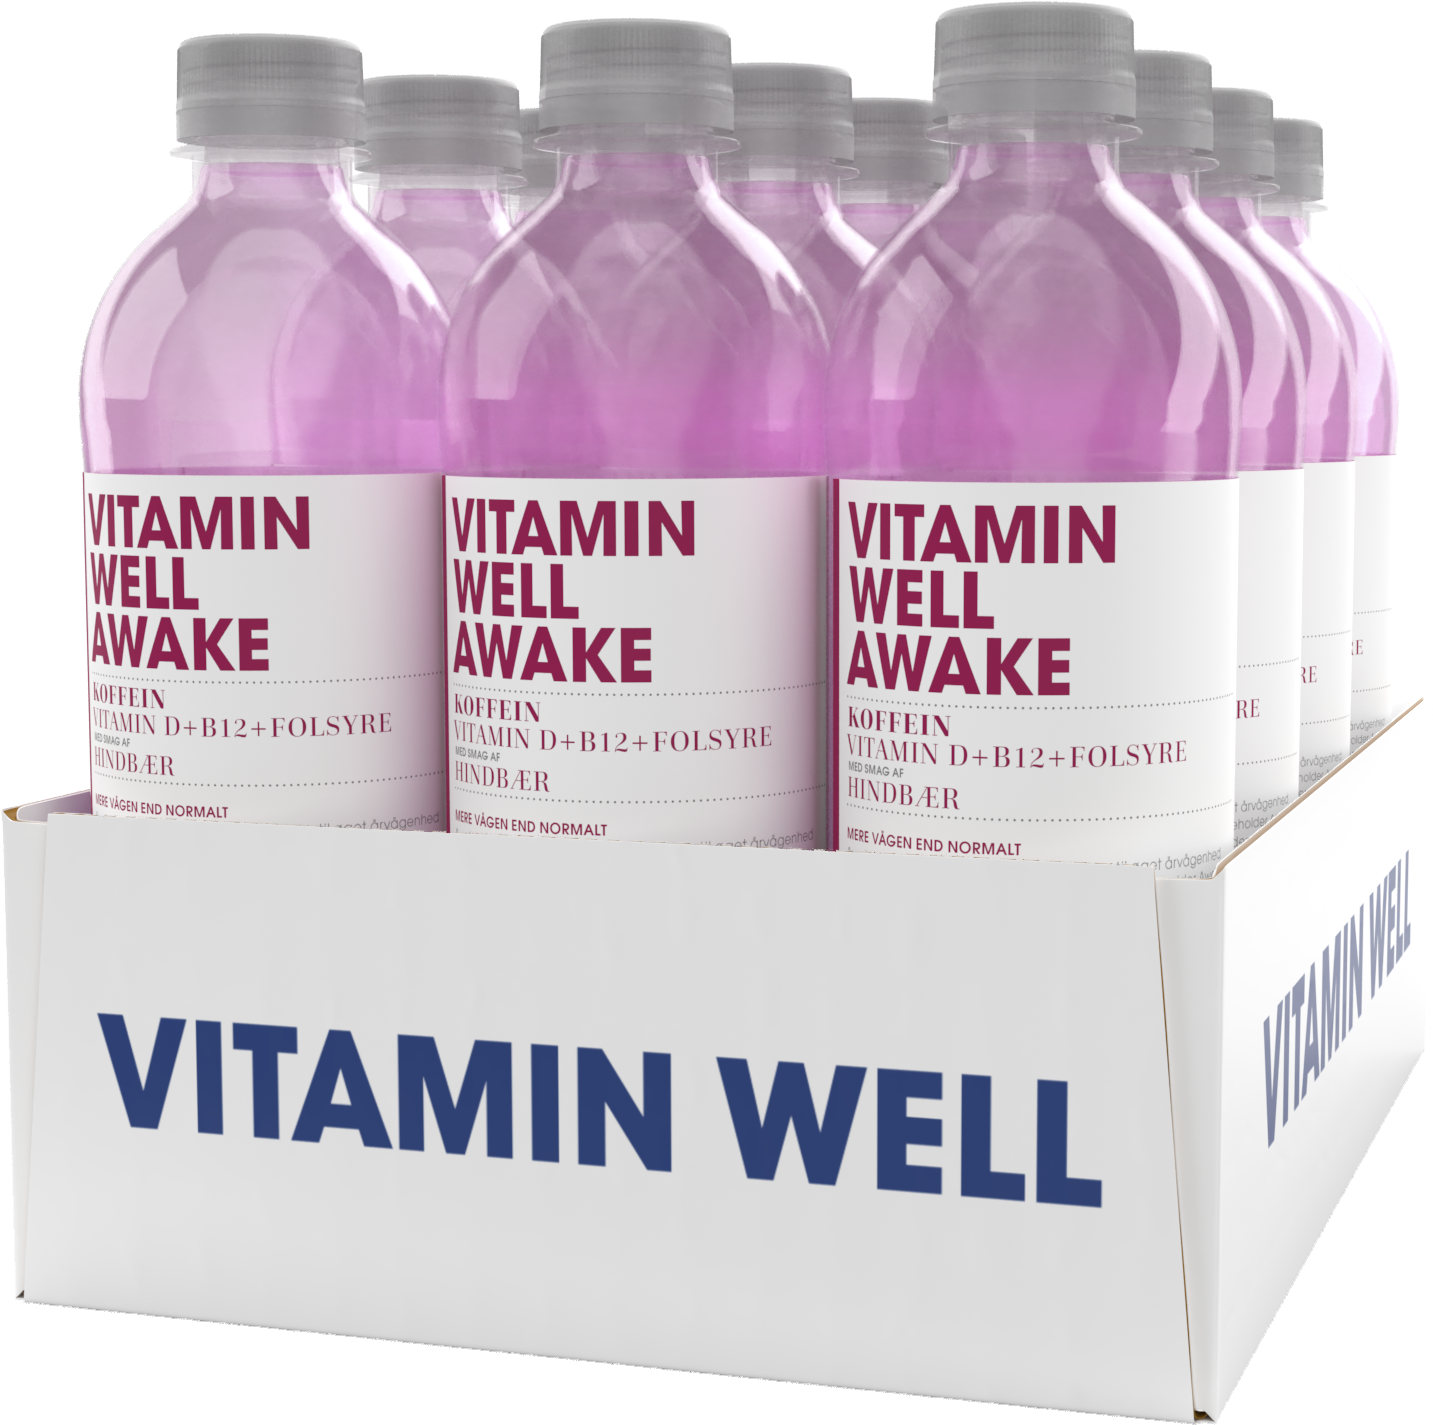 Brug Vitamin Well Awake (12x 500ml) til en forbedret oplevelse